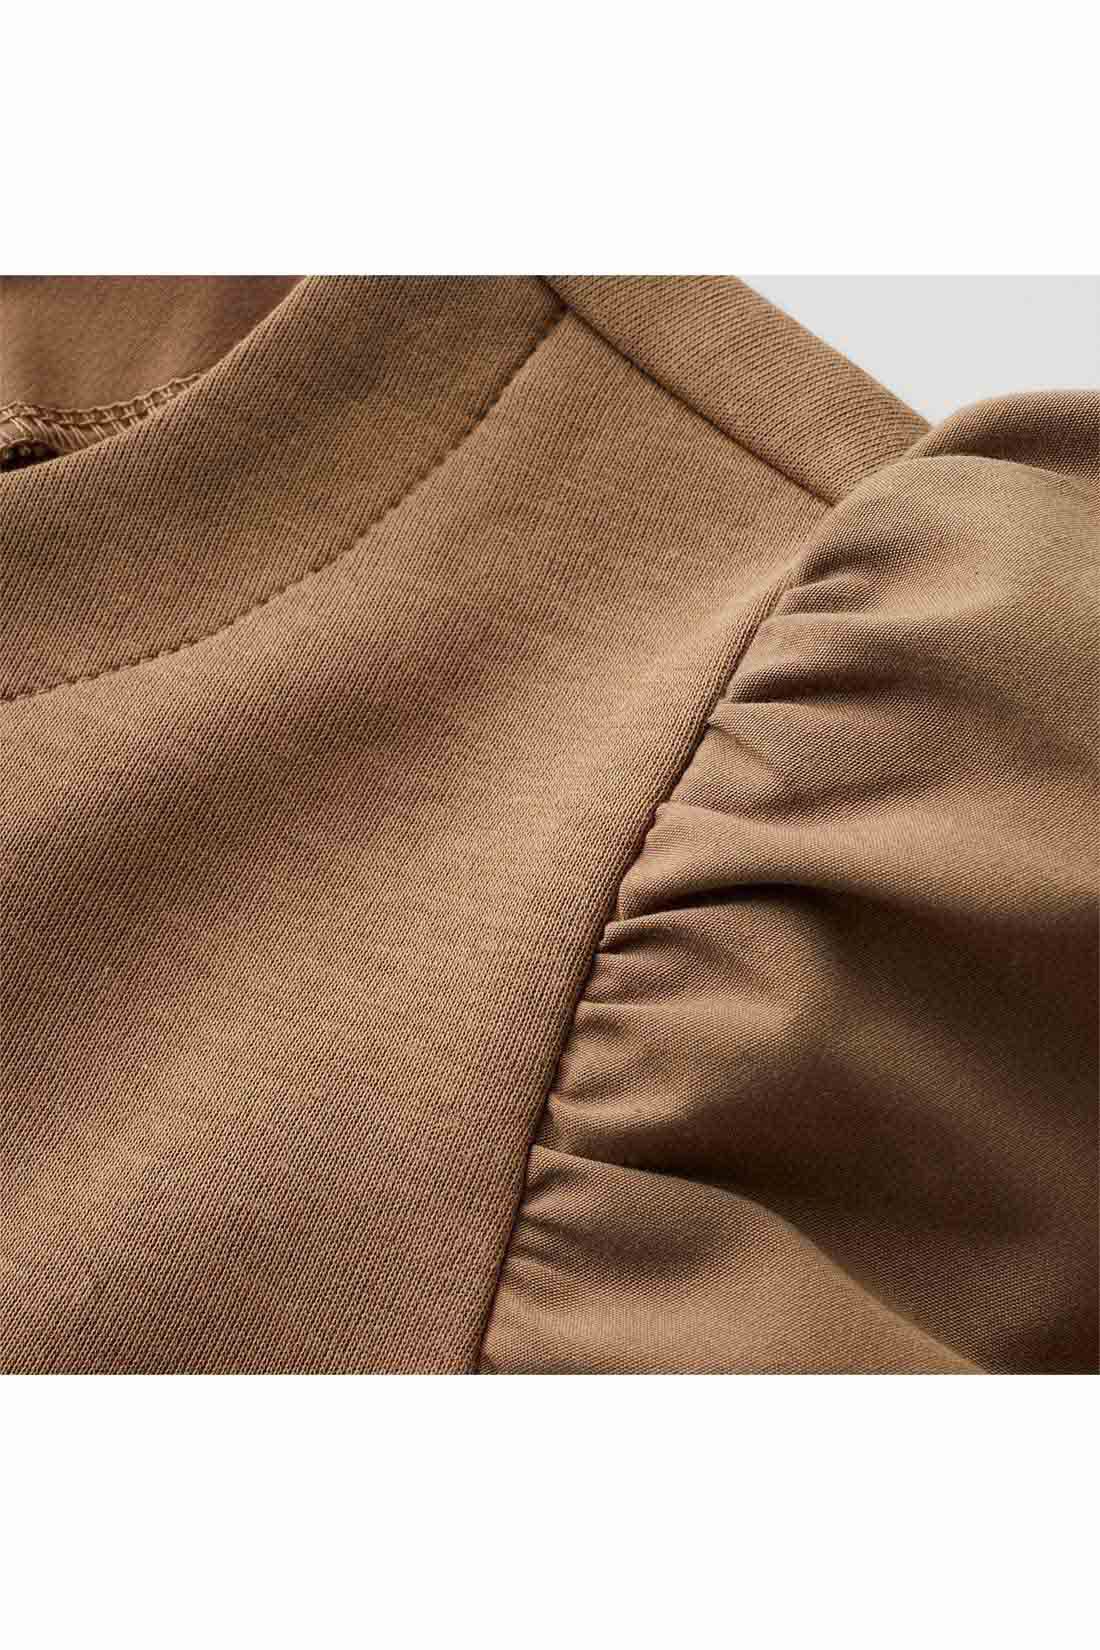 IEDIT|IEDIT[イディット]　ふんわり袖デザインが華やかな 異素材切り替えプルオーバー〈モカ〉|袖は張り感のある布はく素材で軽やかに。身ごろはほどよく厚みがあり表面感のきれいなカットソー素材。